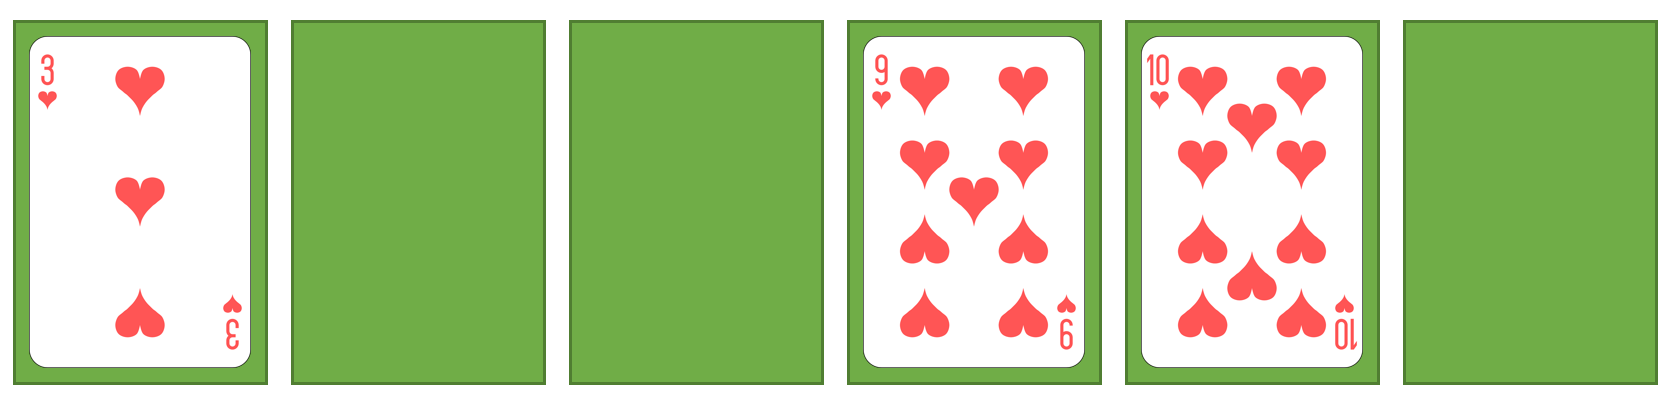 spielkarten-sort4-4